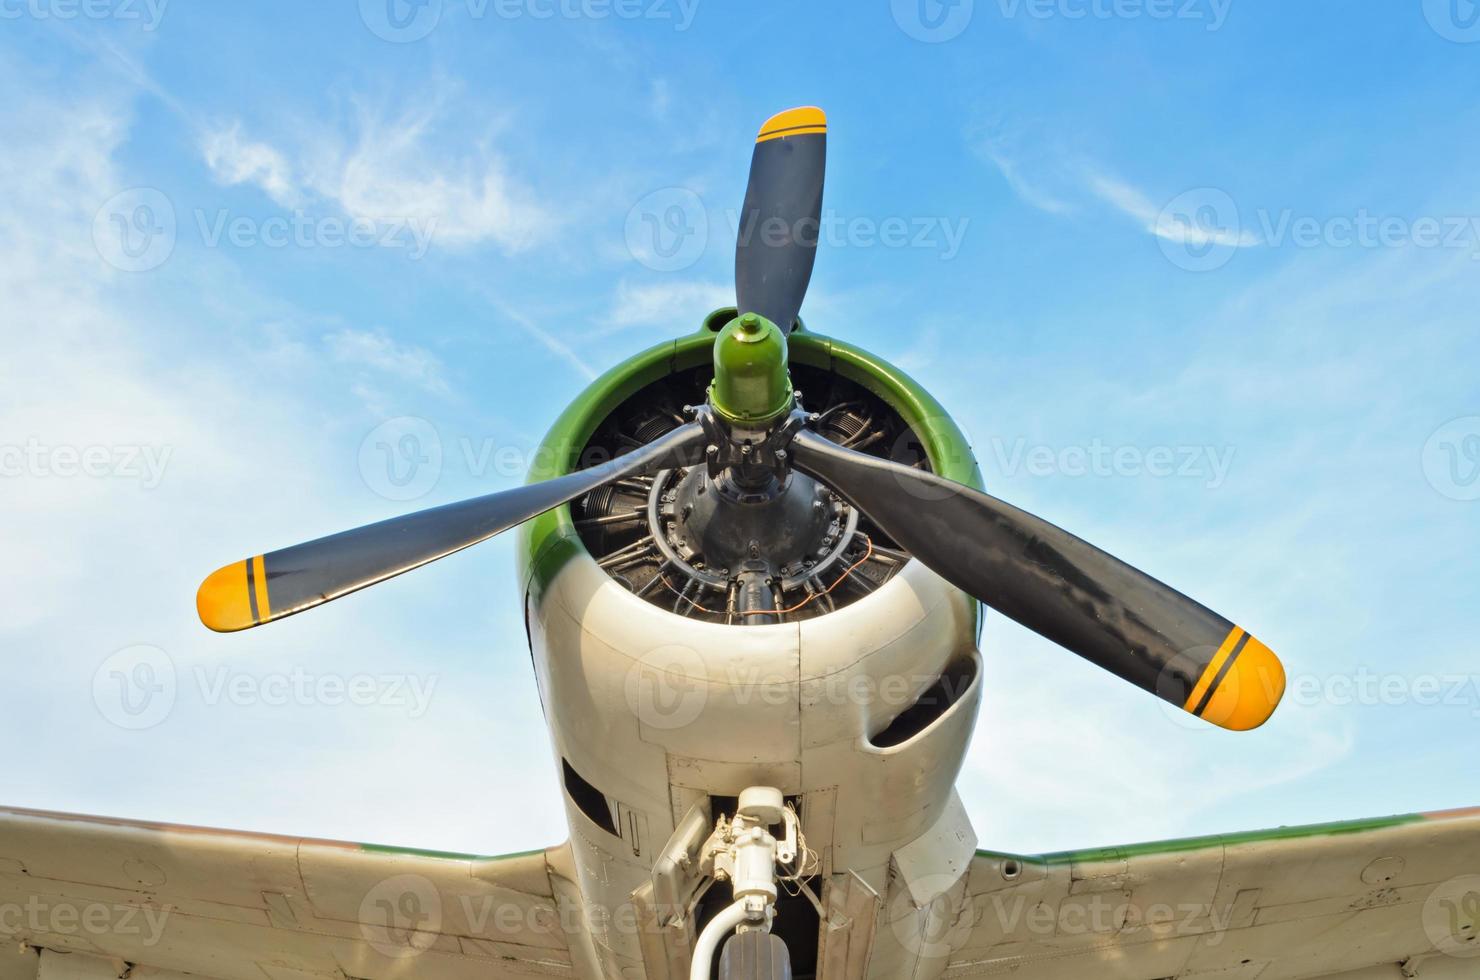 kämpe flygplan i värld krig 2 på himmel bakgrund foto